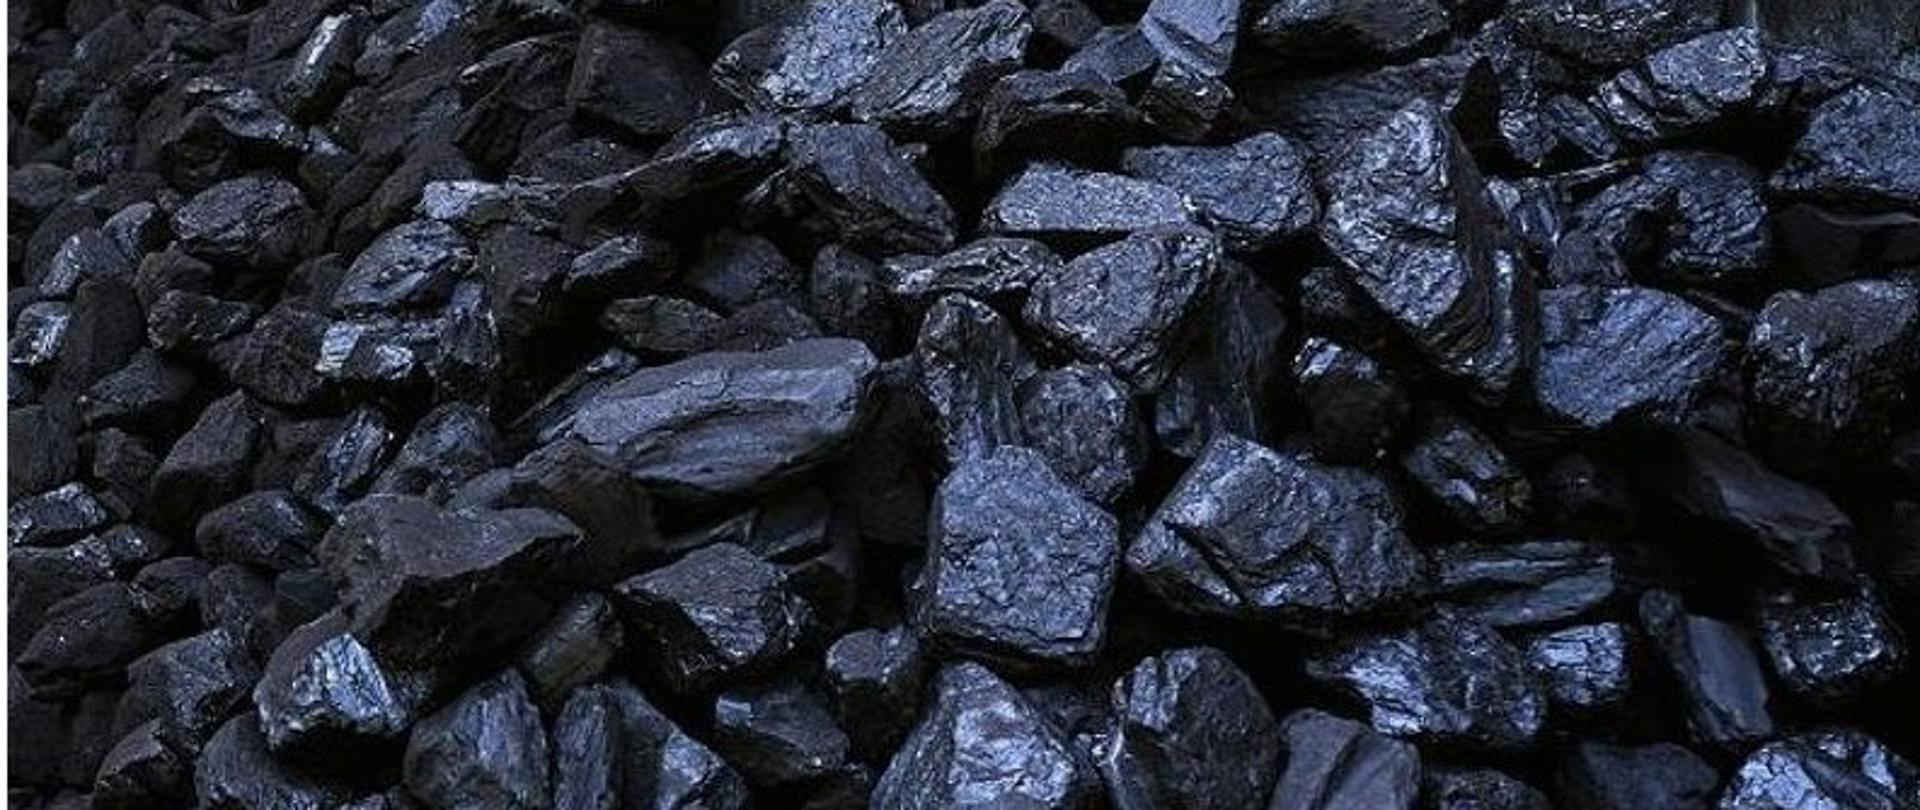 Preferencyjny zakup węgla kamiennego. Na ilustracji składowany węgiel kamienny